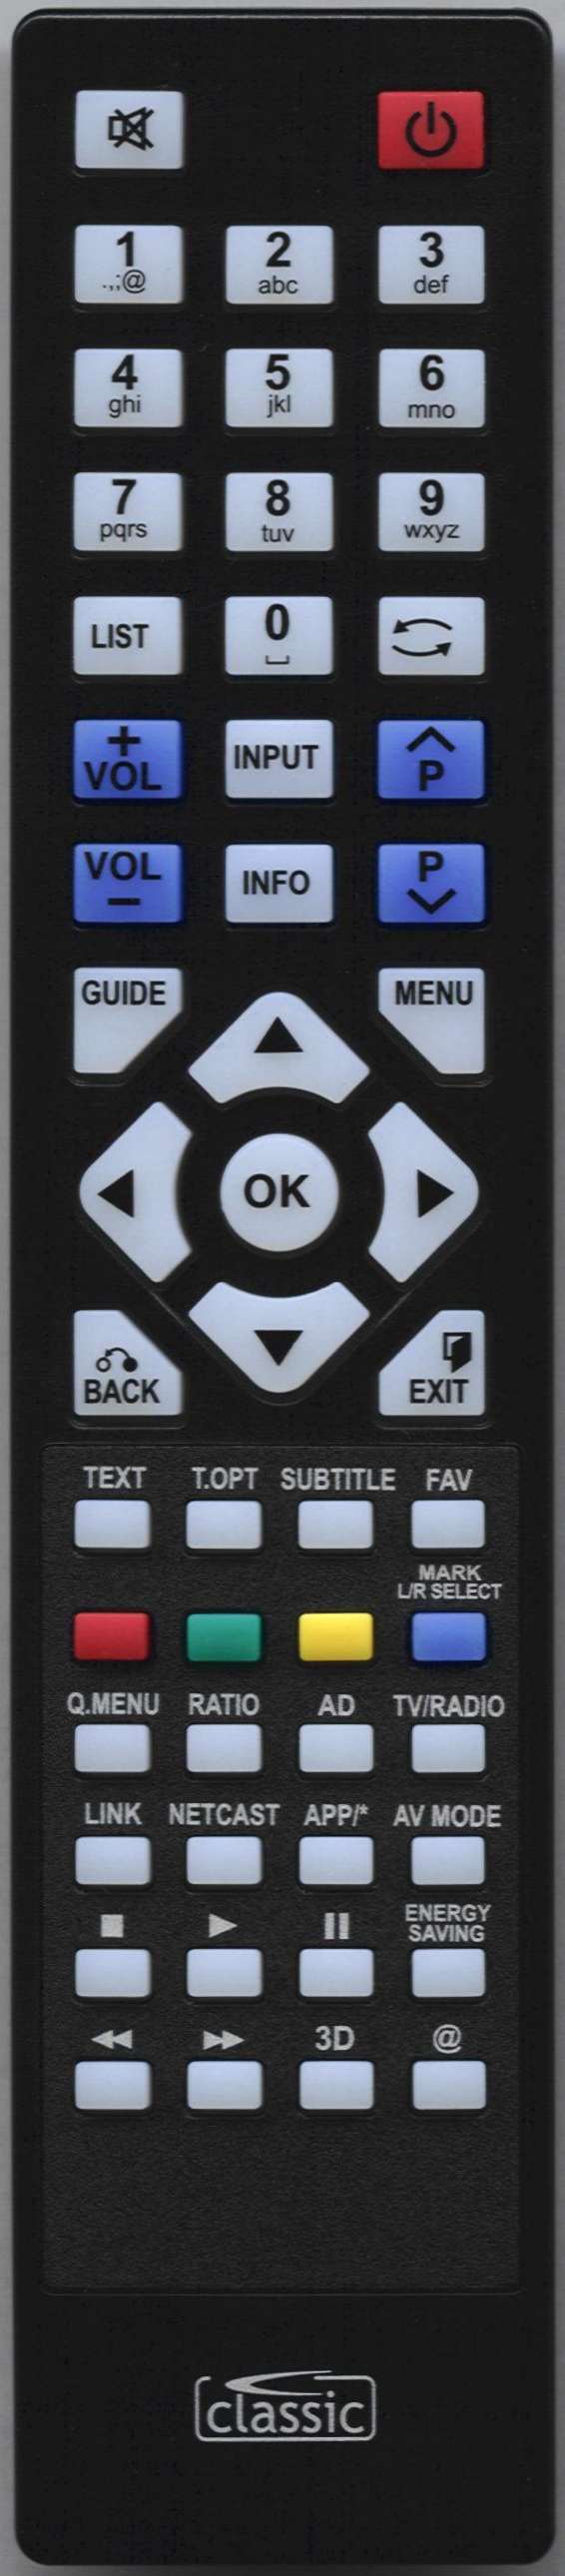 LG 19LE3308 Remote Control